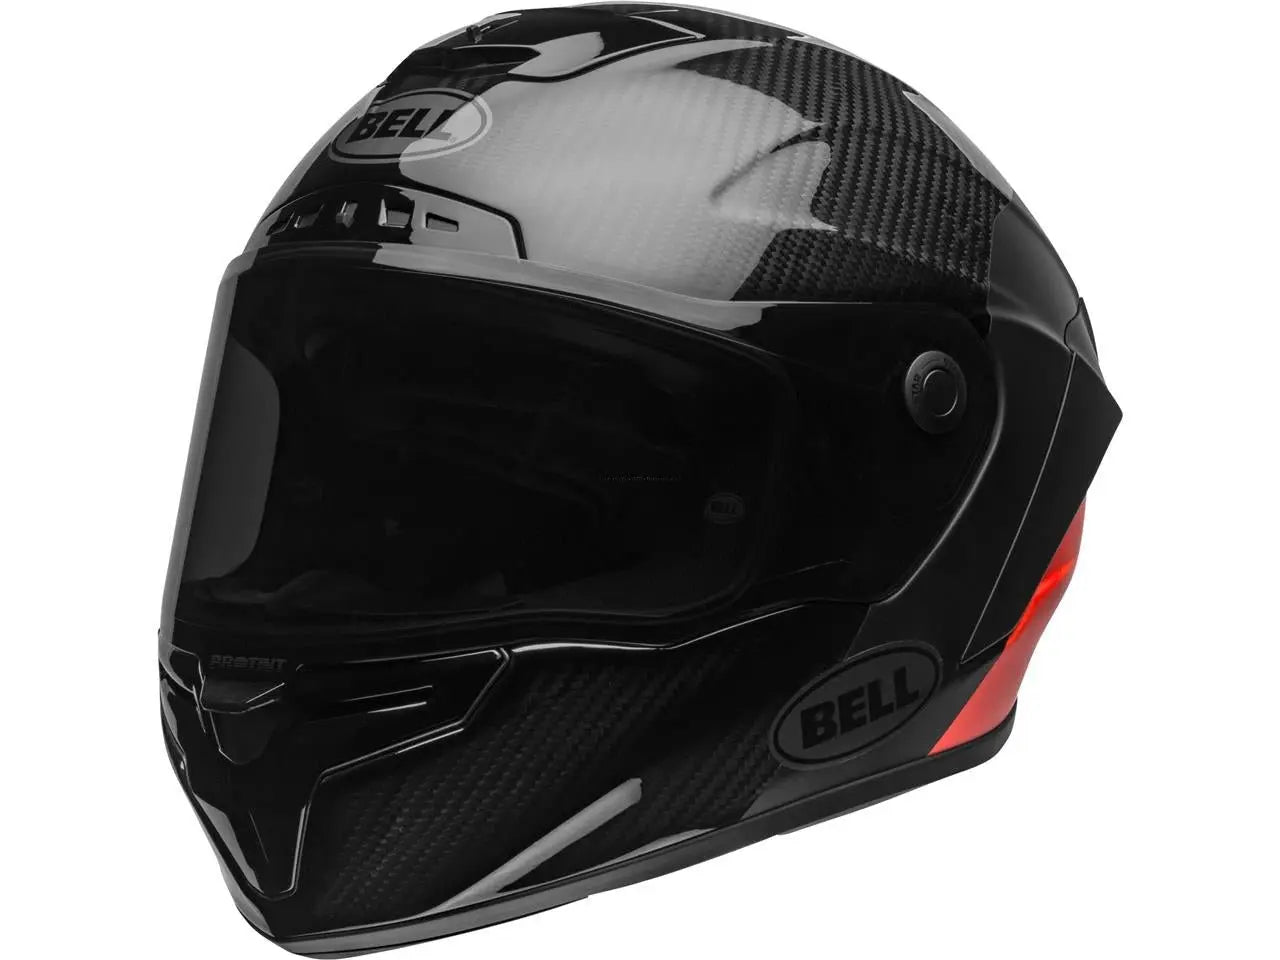 BELL Race Star Flex Helmet Carbon Lux Matte/Gloss Black/Red BELL 704.95 Falan Parts